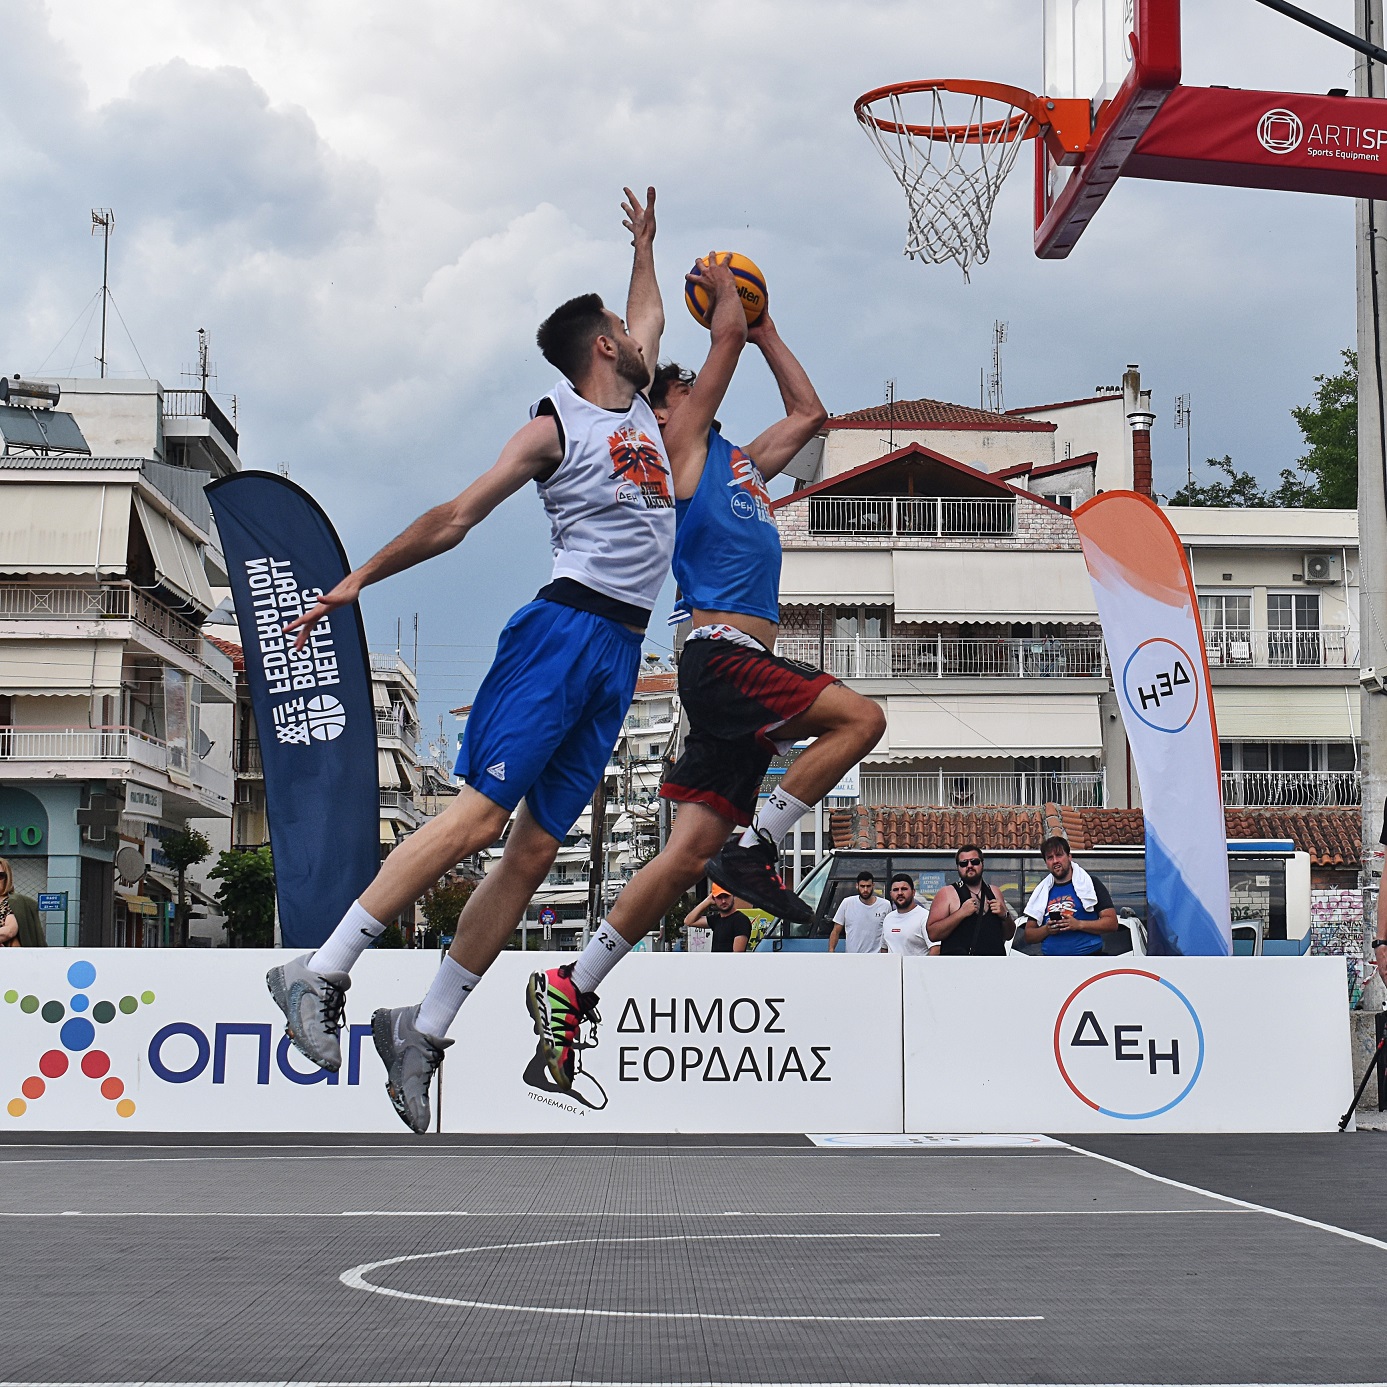 ΔΕΗ: Με εκατοντάδες συμμετοχές από όλη την Ελλάδα ολοκληρώθηκε το 3×3 ΔΕΗ Street Basketball